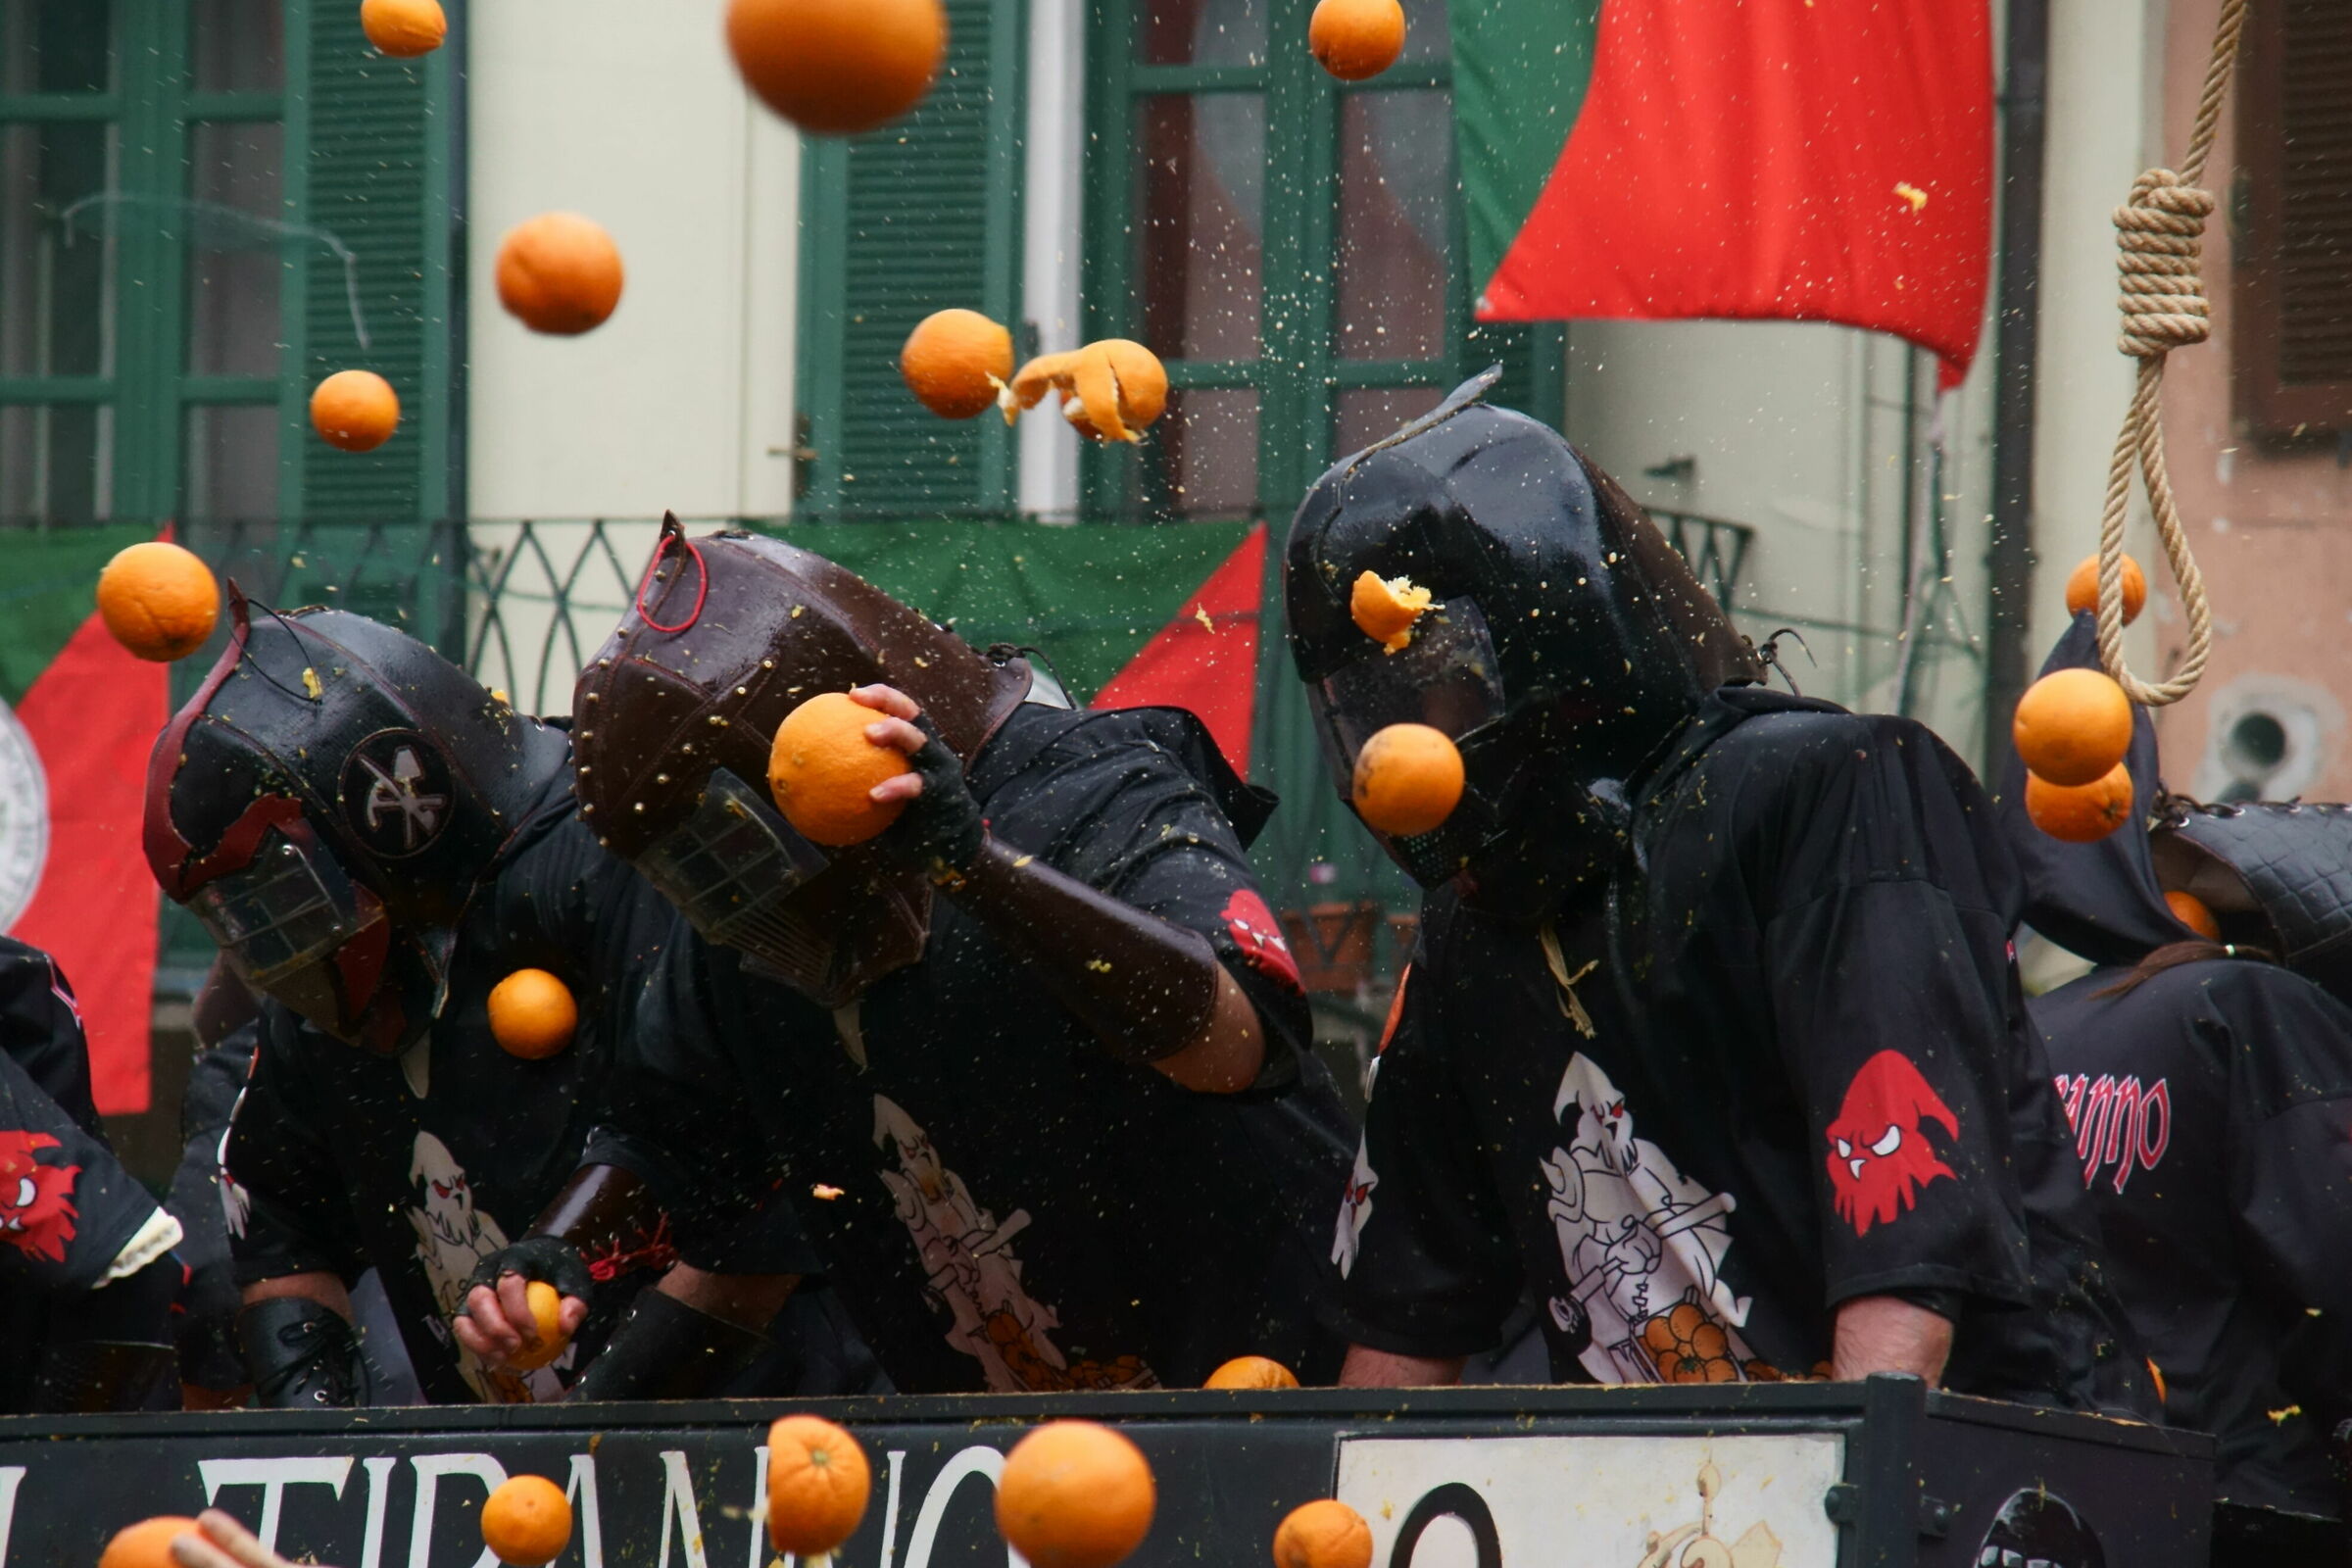 battaglia delle arance 2019 ivrea borghetto-boia...